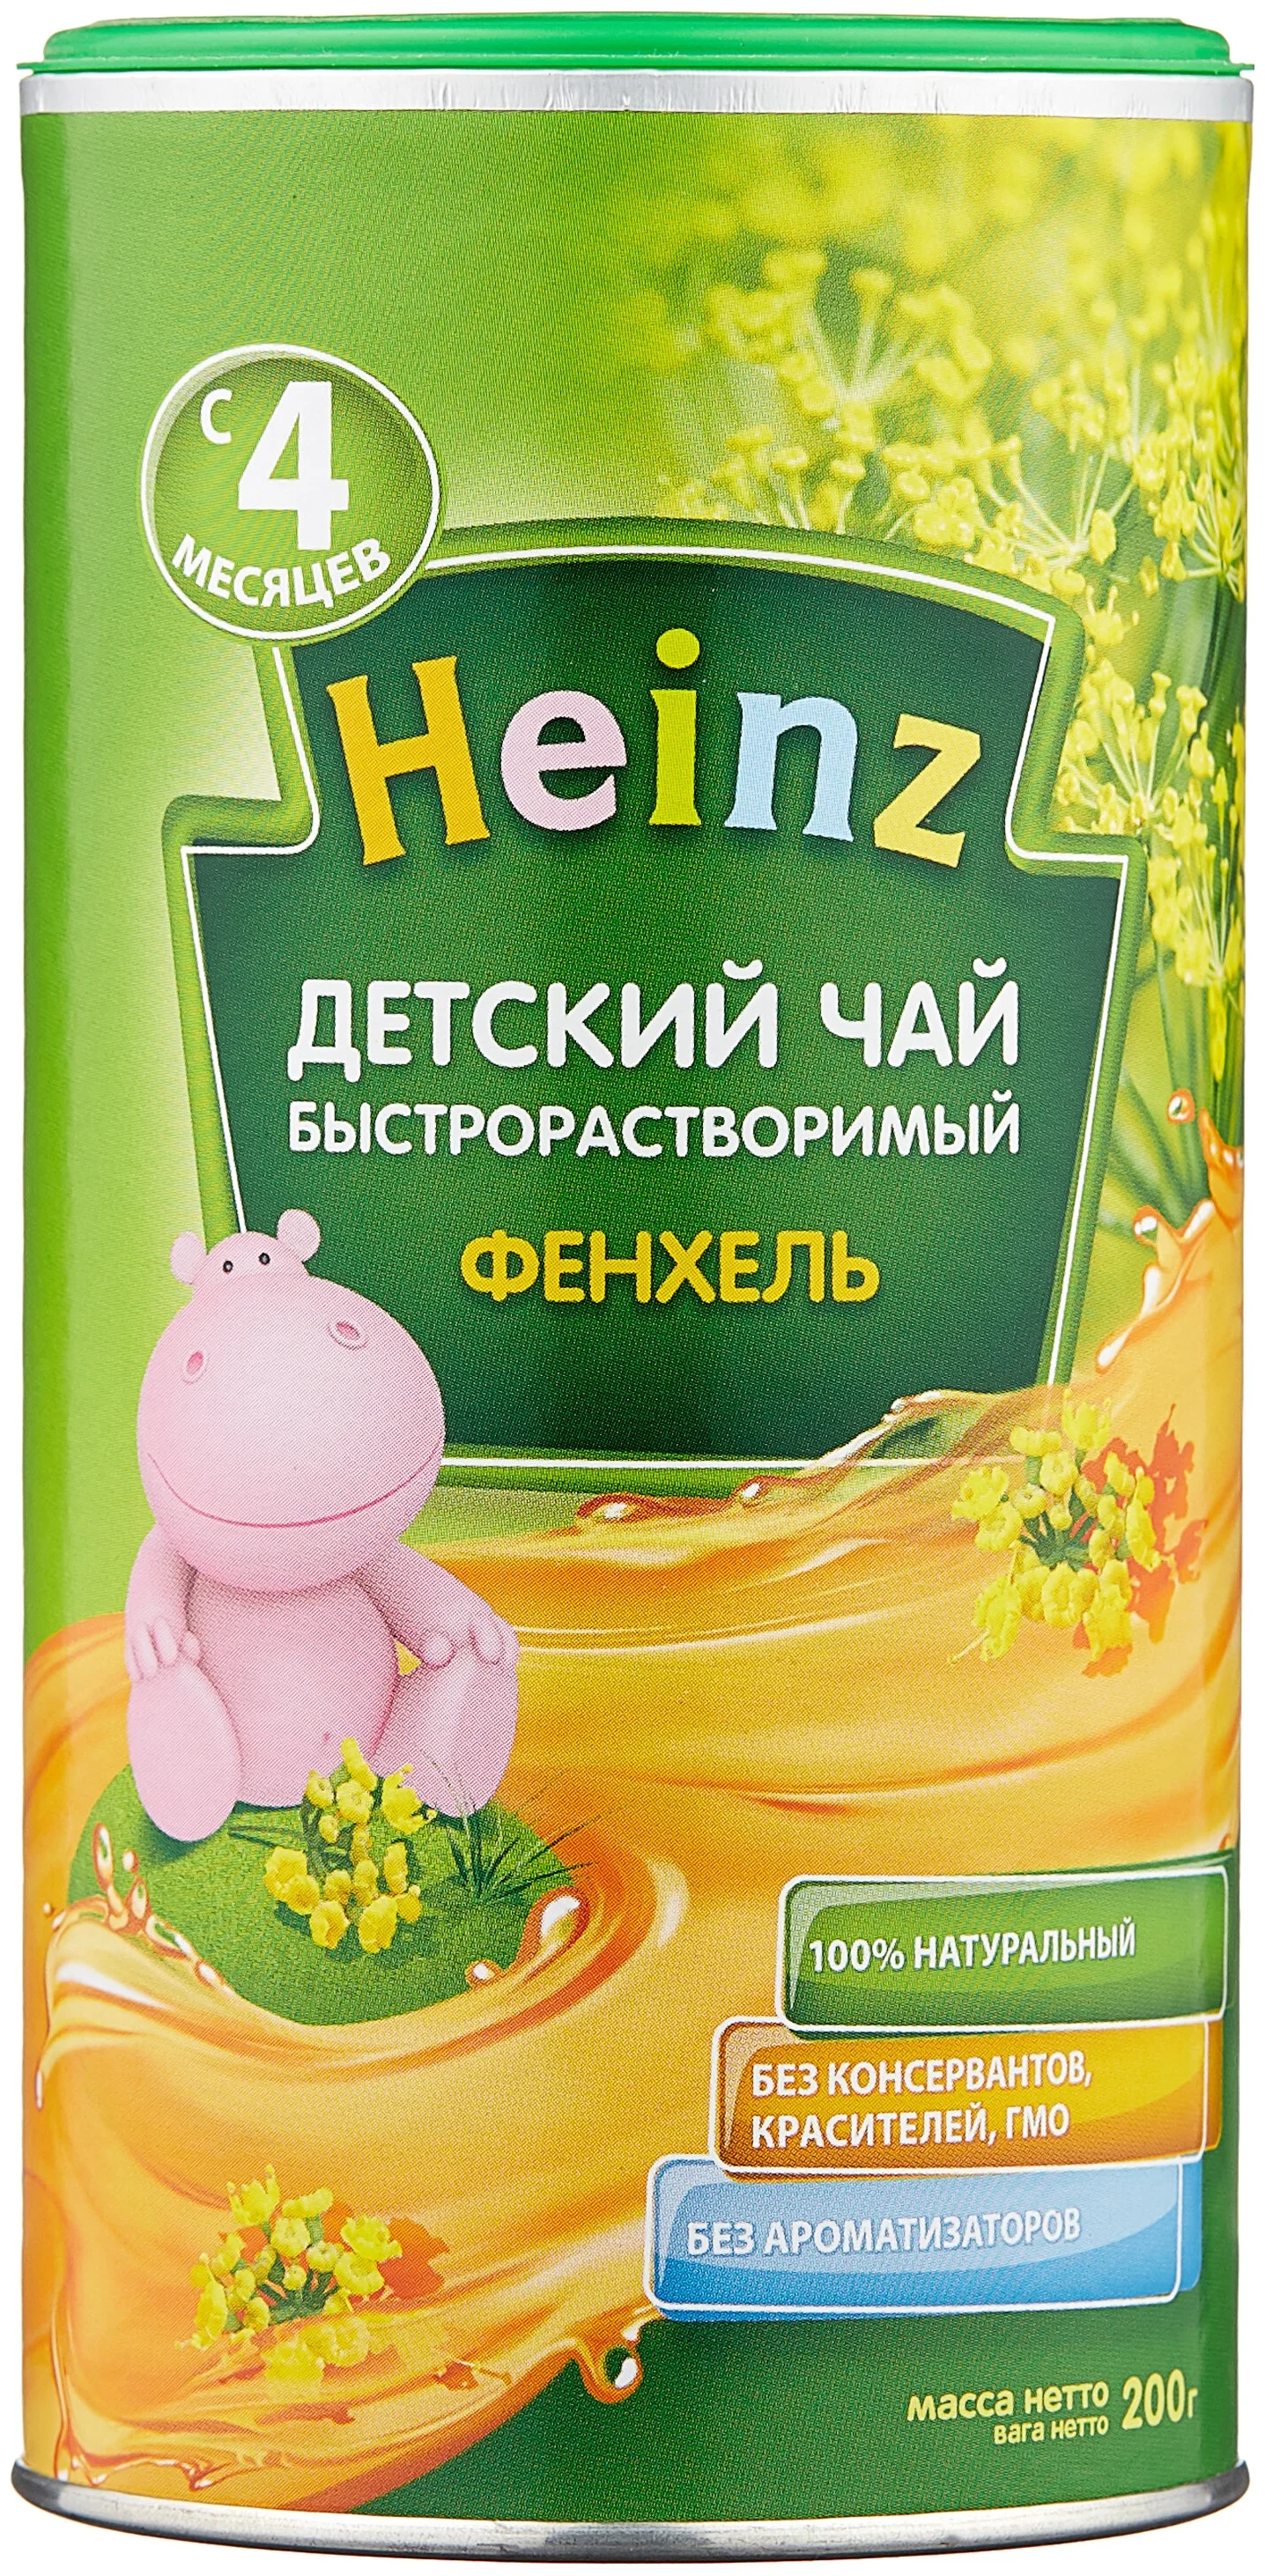 Heinz "Фенхель" - тип: гранулированный чай